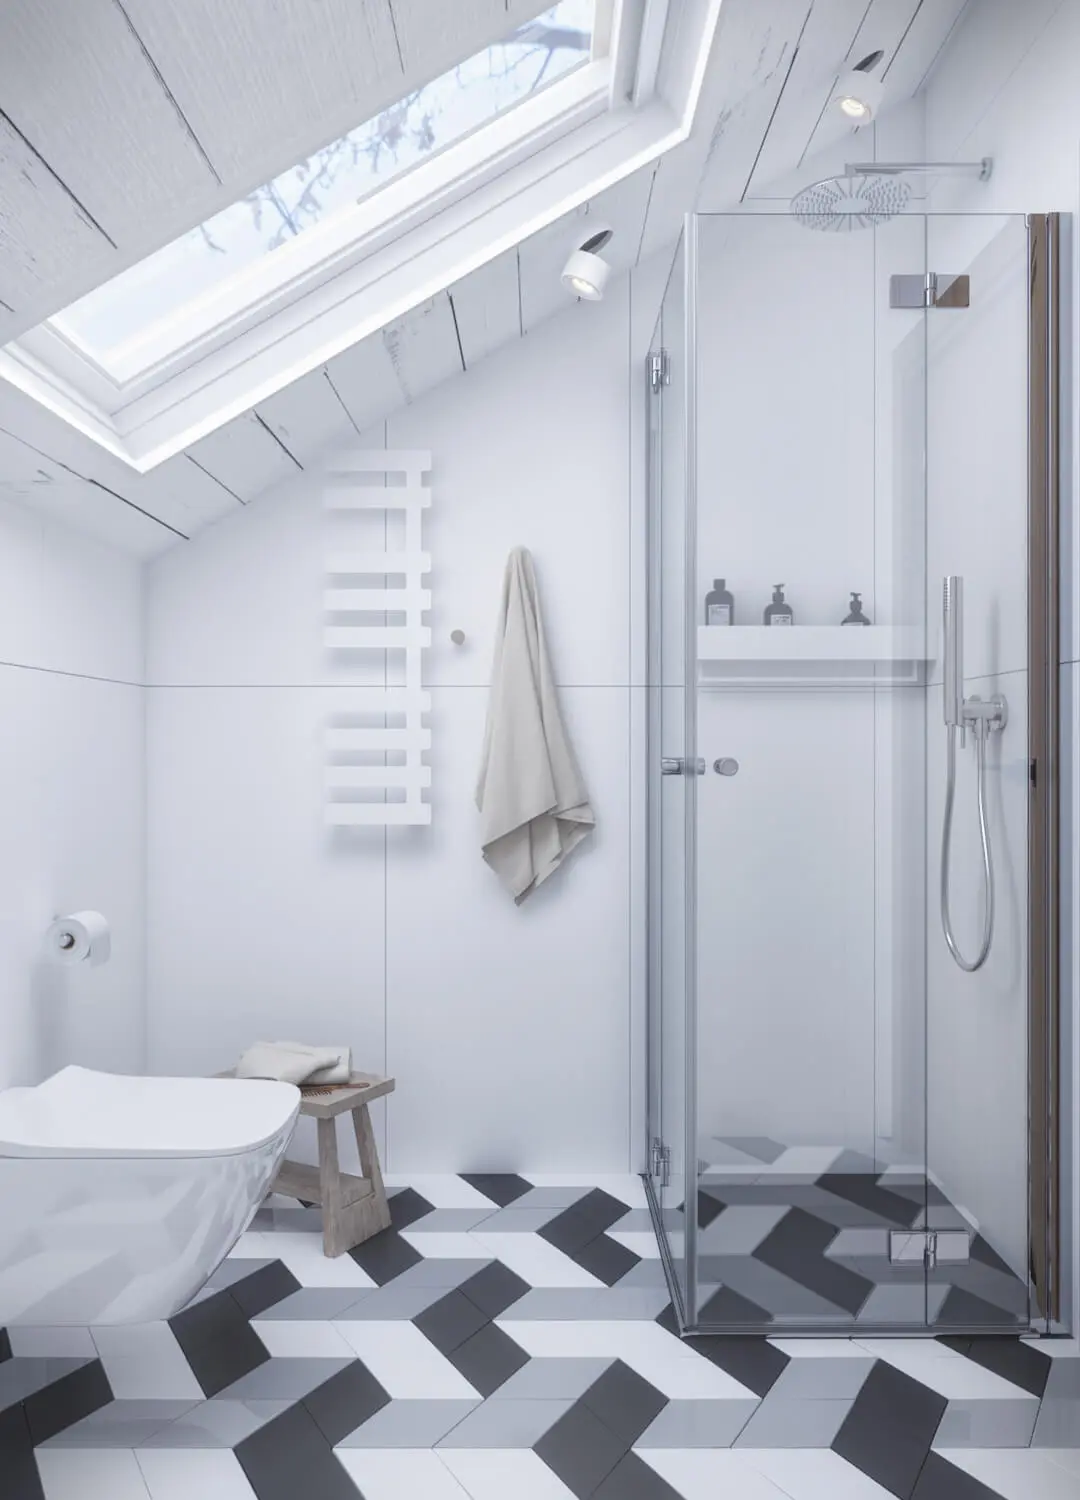 Jasna, biała łazienka z przeszkloną kabiną prysznicową i dekoracyjnymi kaflami na podłodze